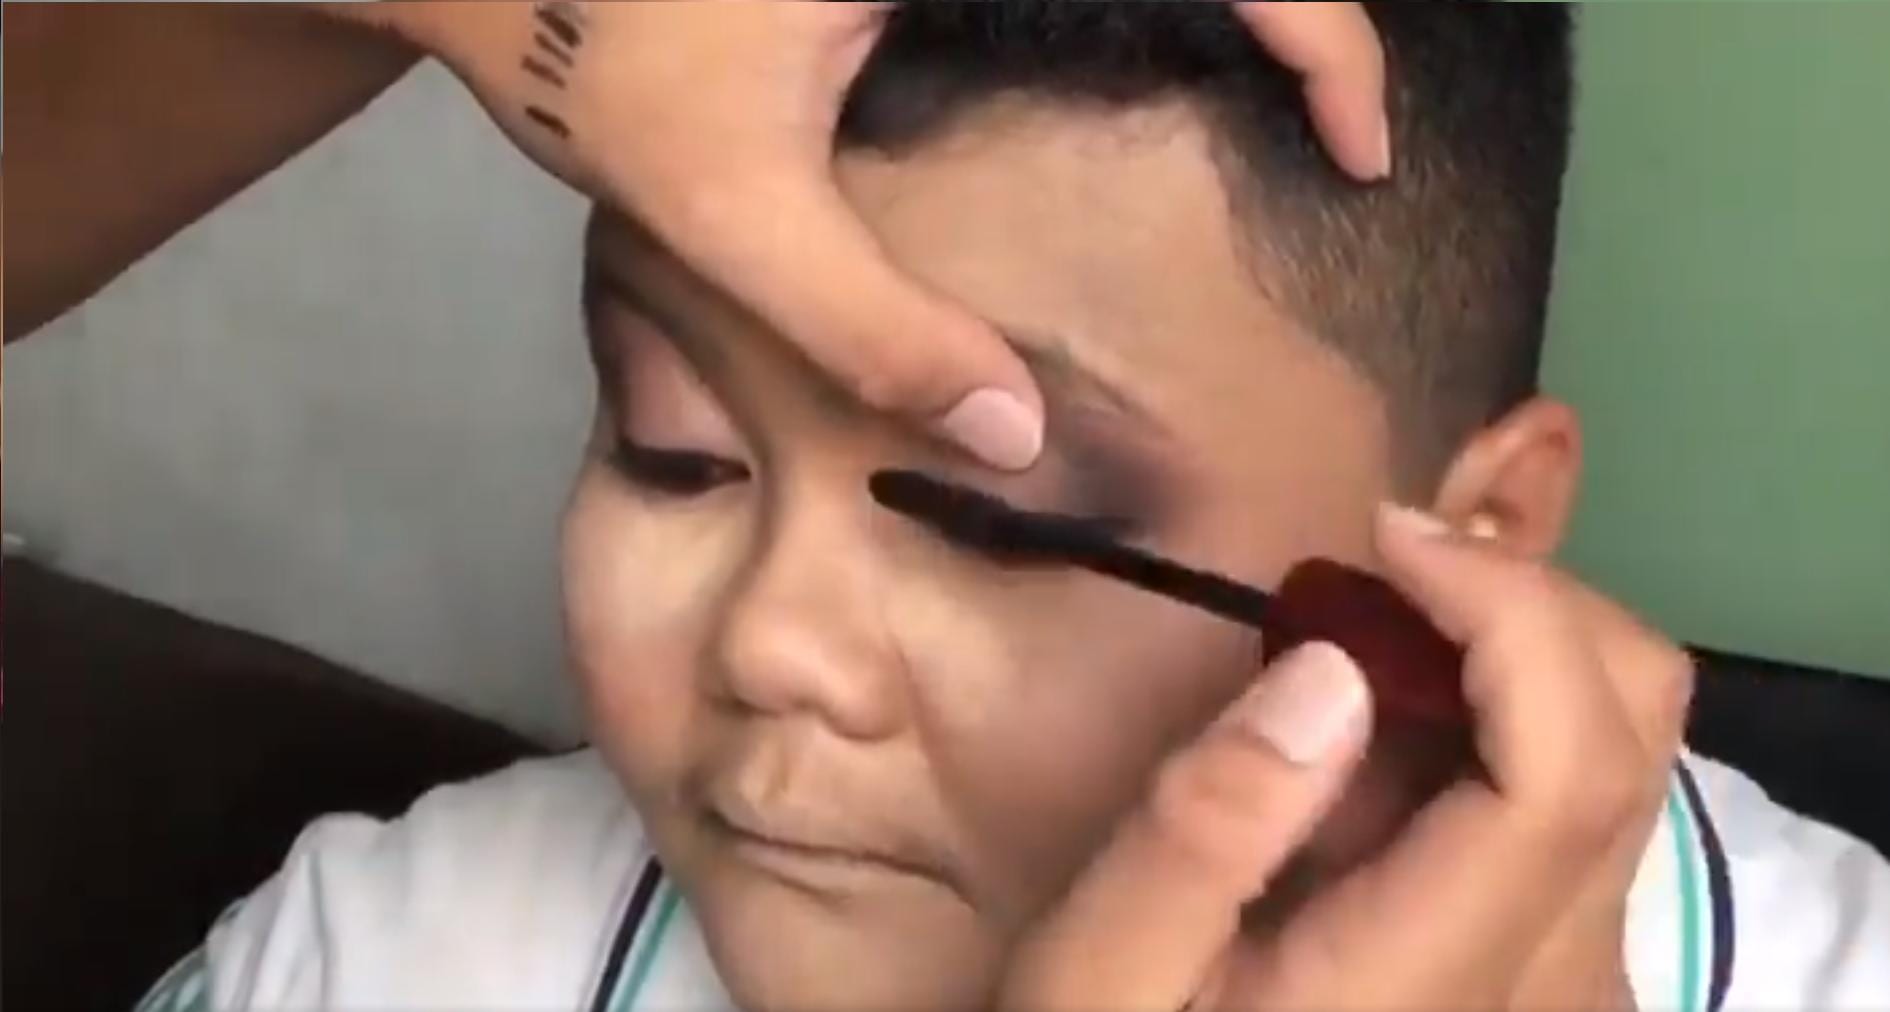 [VIDEO] ‘The Power Of Makeup’ – Transformasi Wajah T0mb0y Ini Amat Mengagumkan!